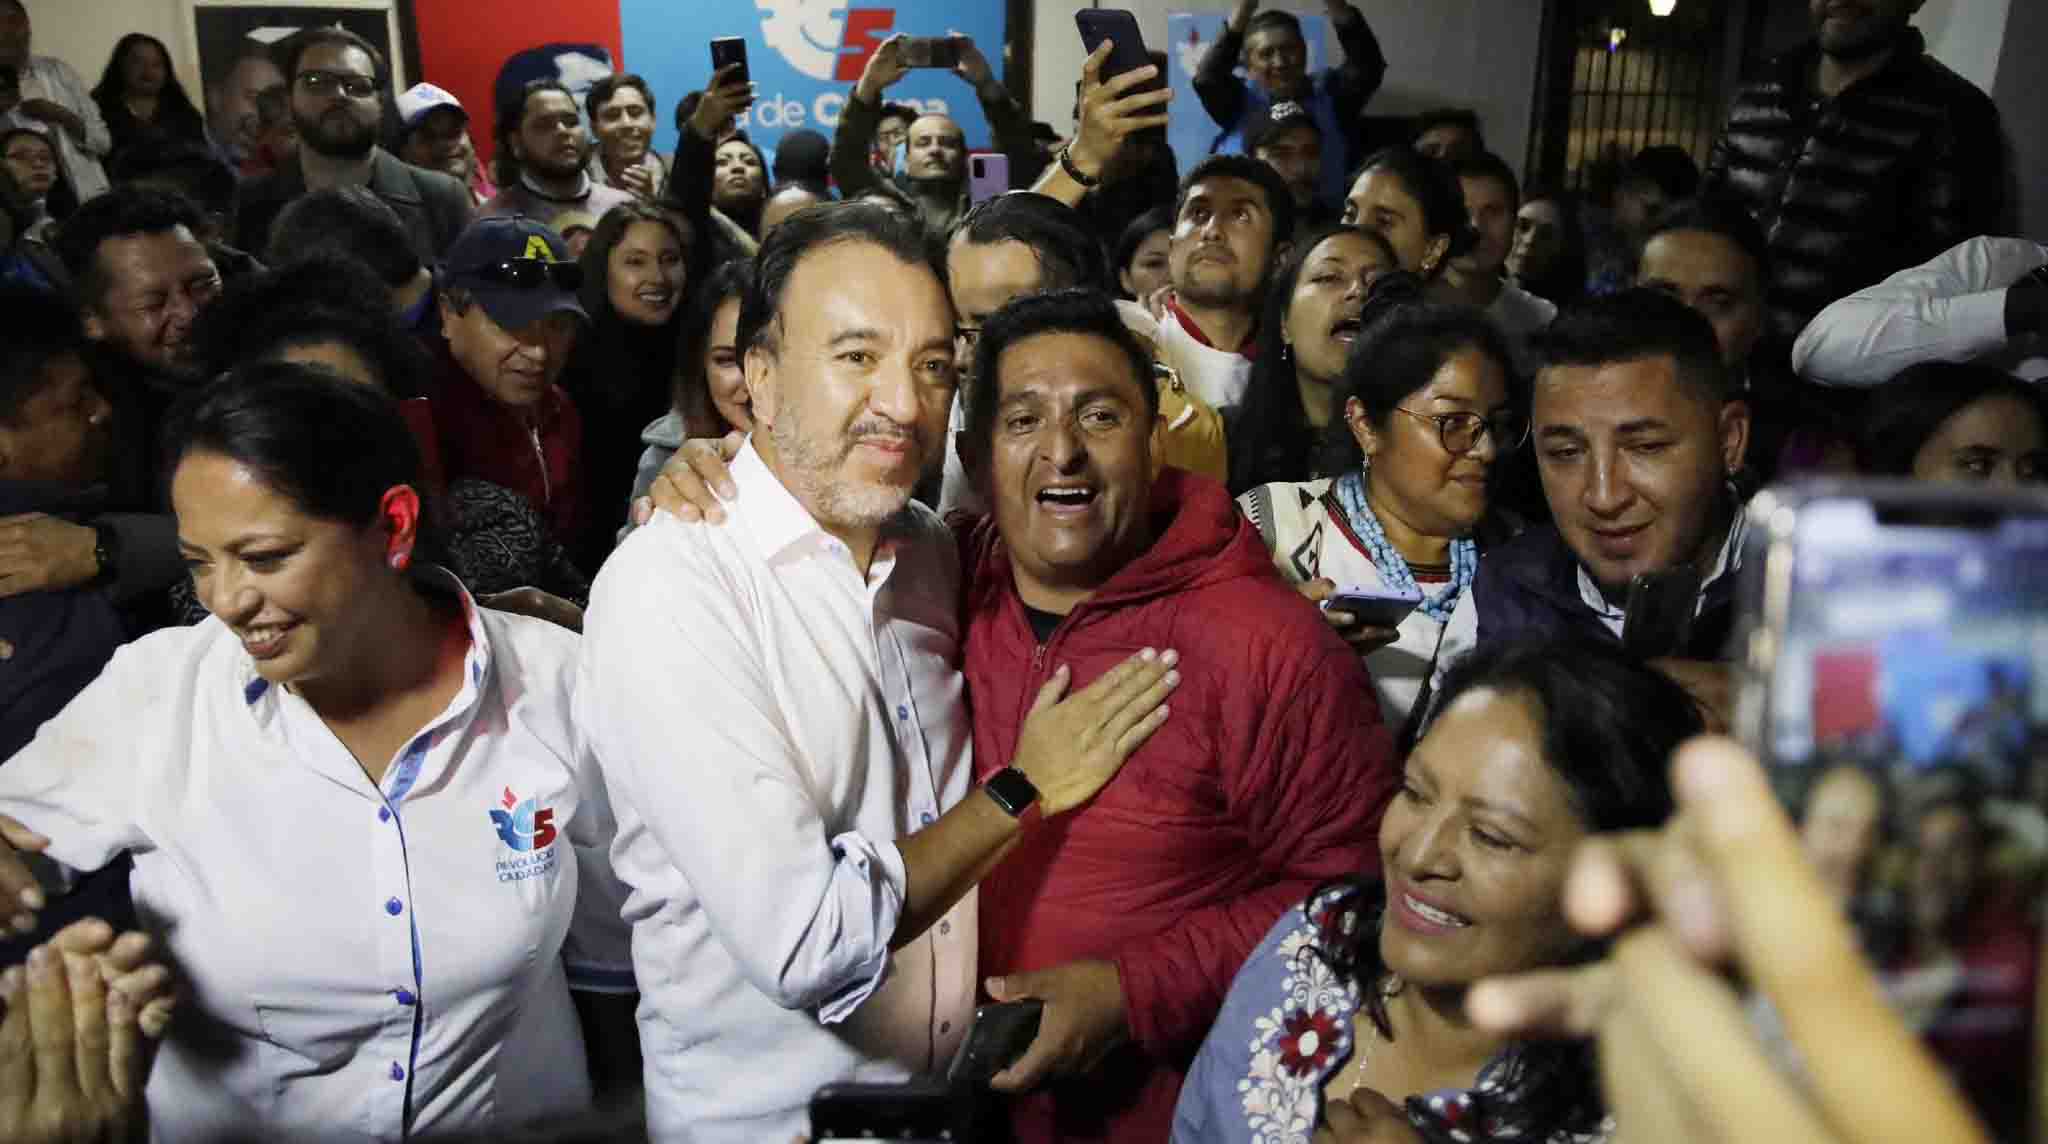 Pabel Muñoz, de la Revolución Ciudadana, es el nuevo Alcalde electo de Quito tras la jornada electoral que vivió Ecuador el domingo 5 de febrero. Foto: Twitter Pabel Muñoz